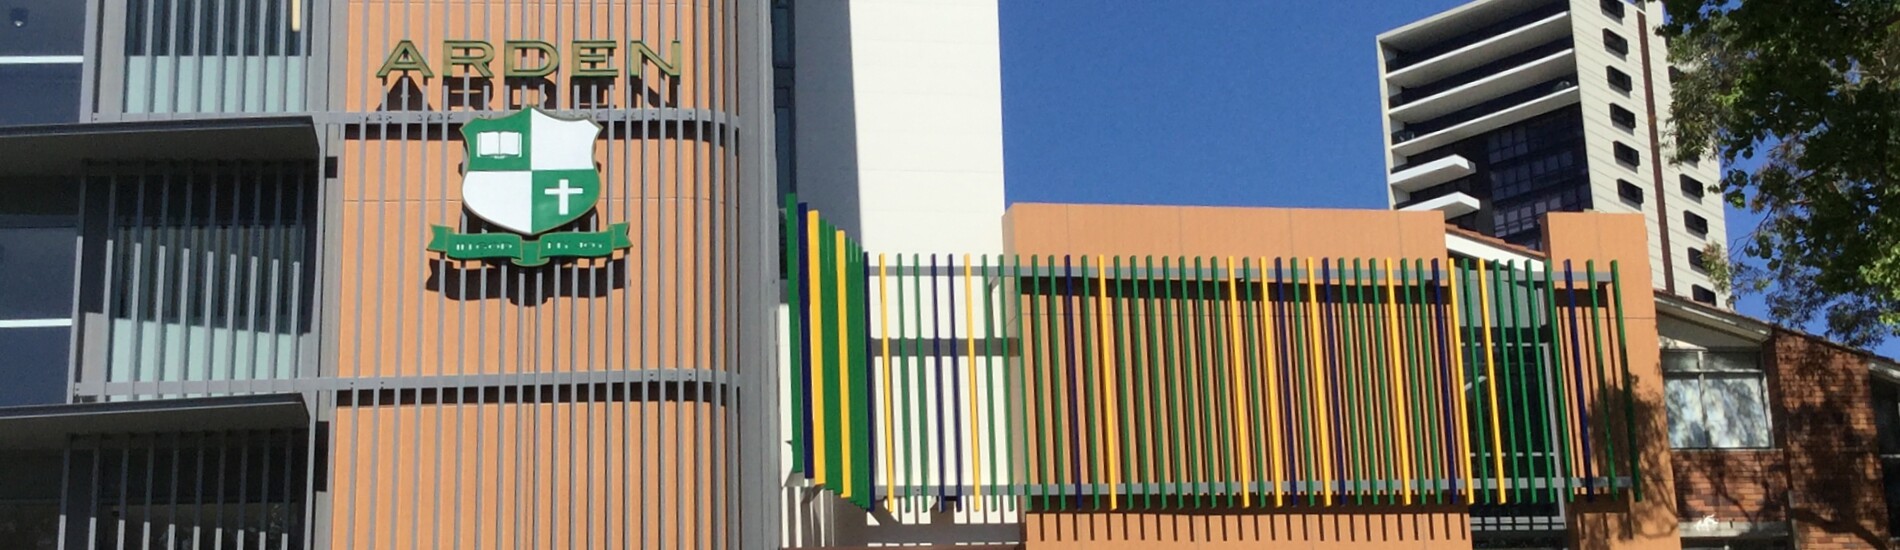 ALUCLICK Exterior Aluminium Beams on School Facade